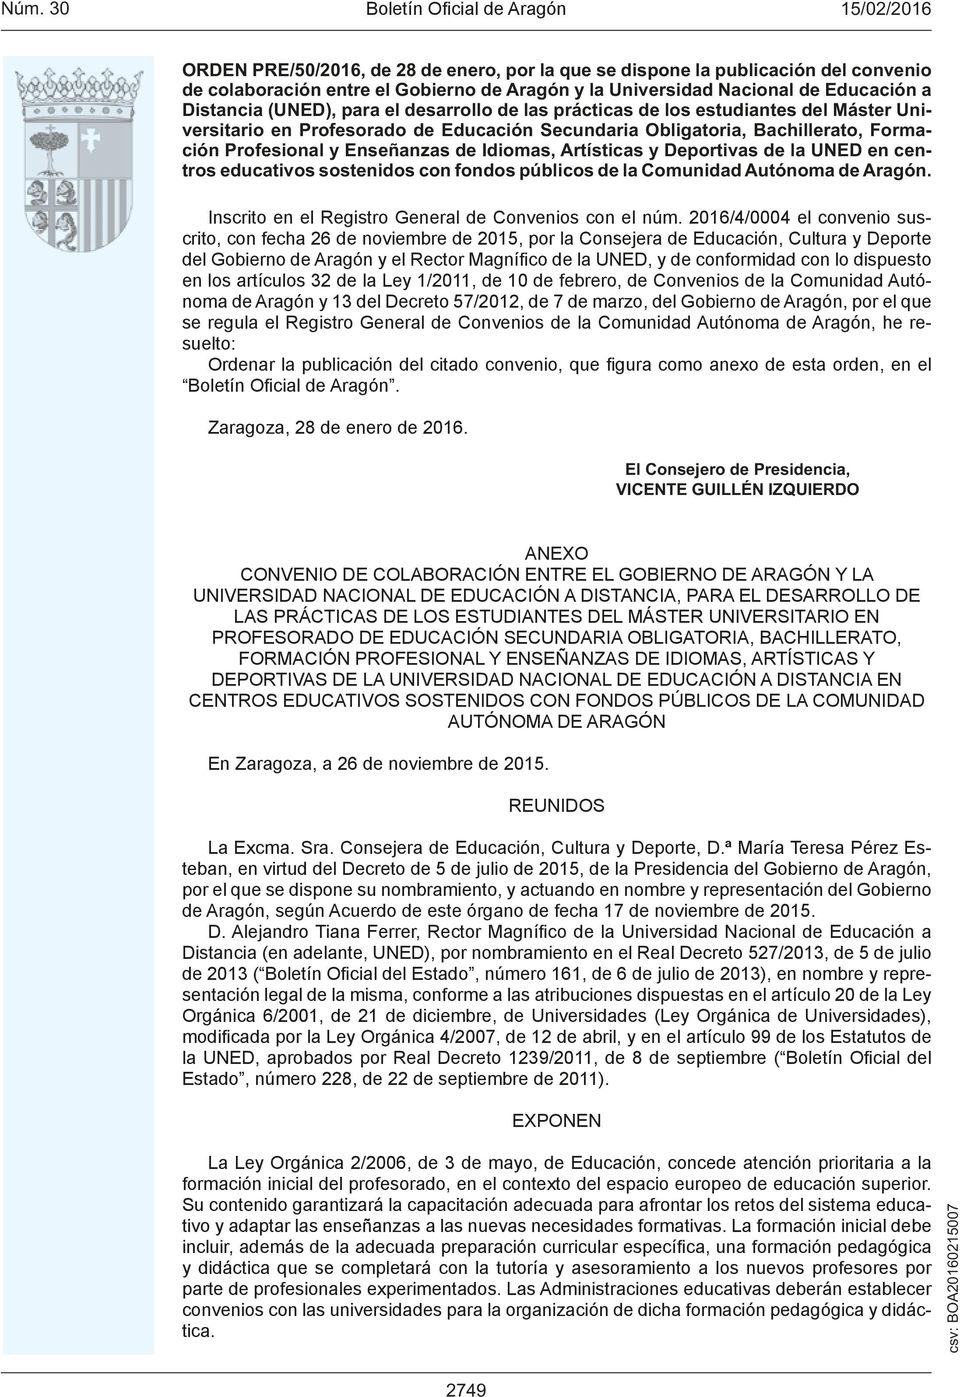 Deportivas de la UNED en centros educativos sostenidos con fondos públicos de la Comunidad Autónoma de Aragón. Inscrito en el Registro General de Convenios con el núm.